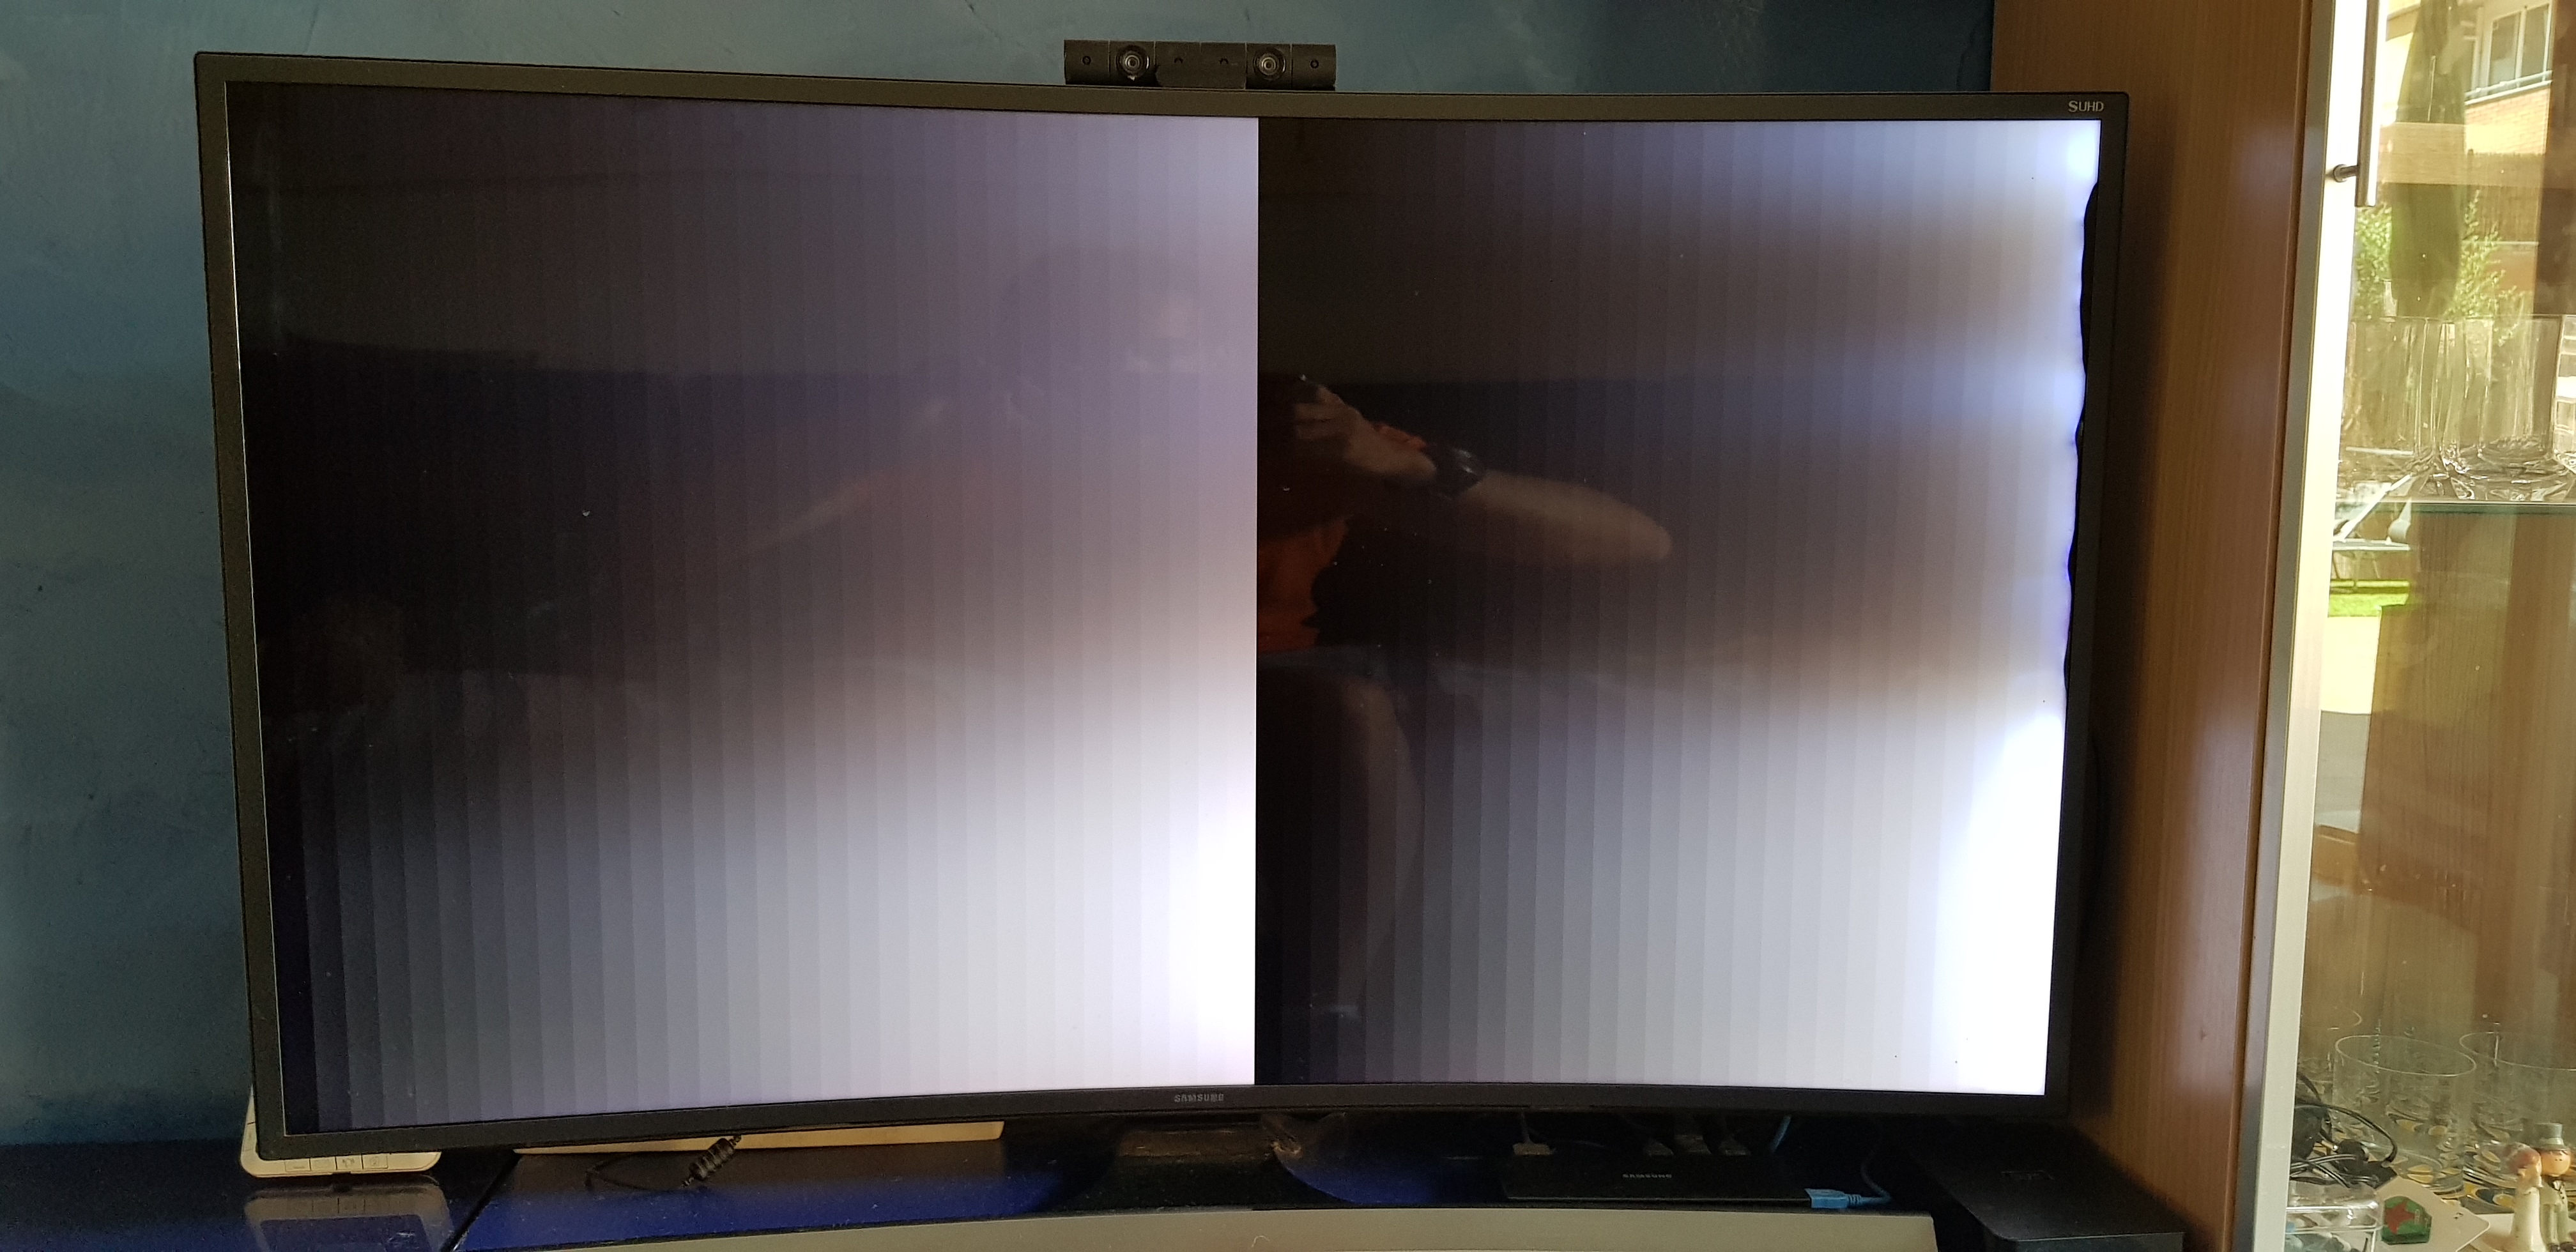 Solucionado: Televisor con Pixel atascado en QE49Q70R - Samsung Community